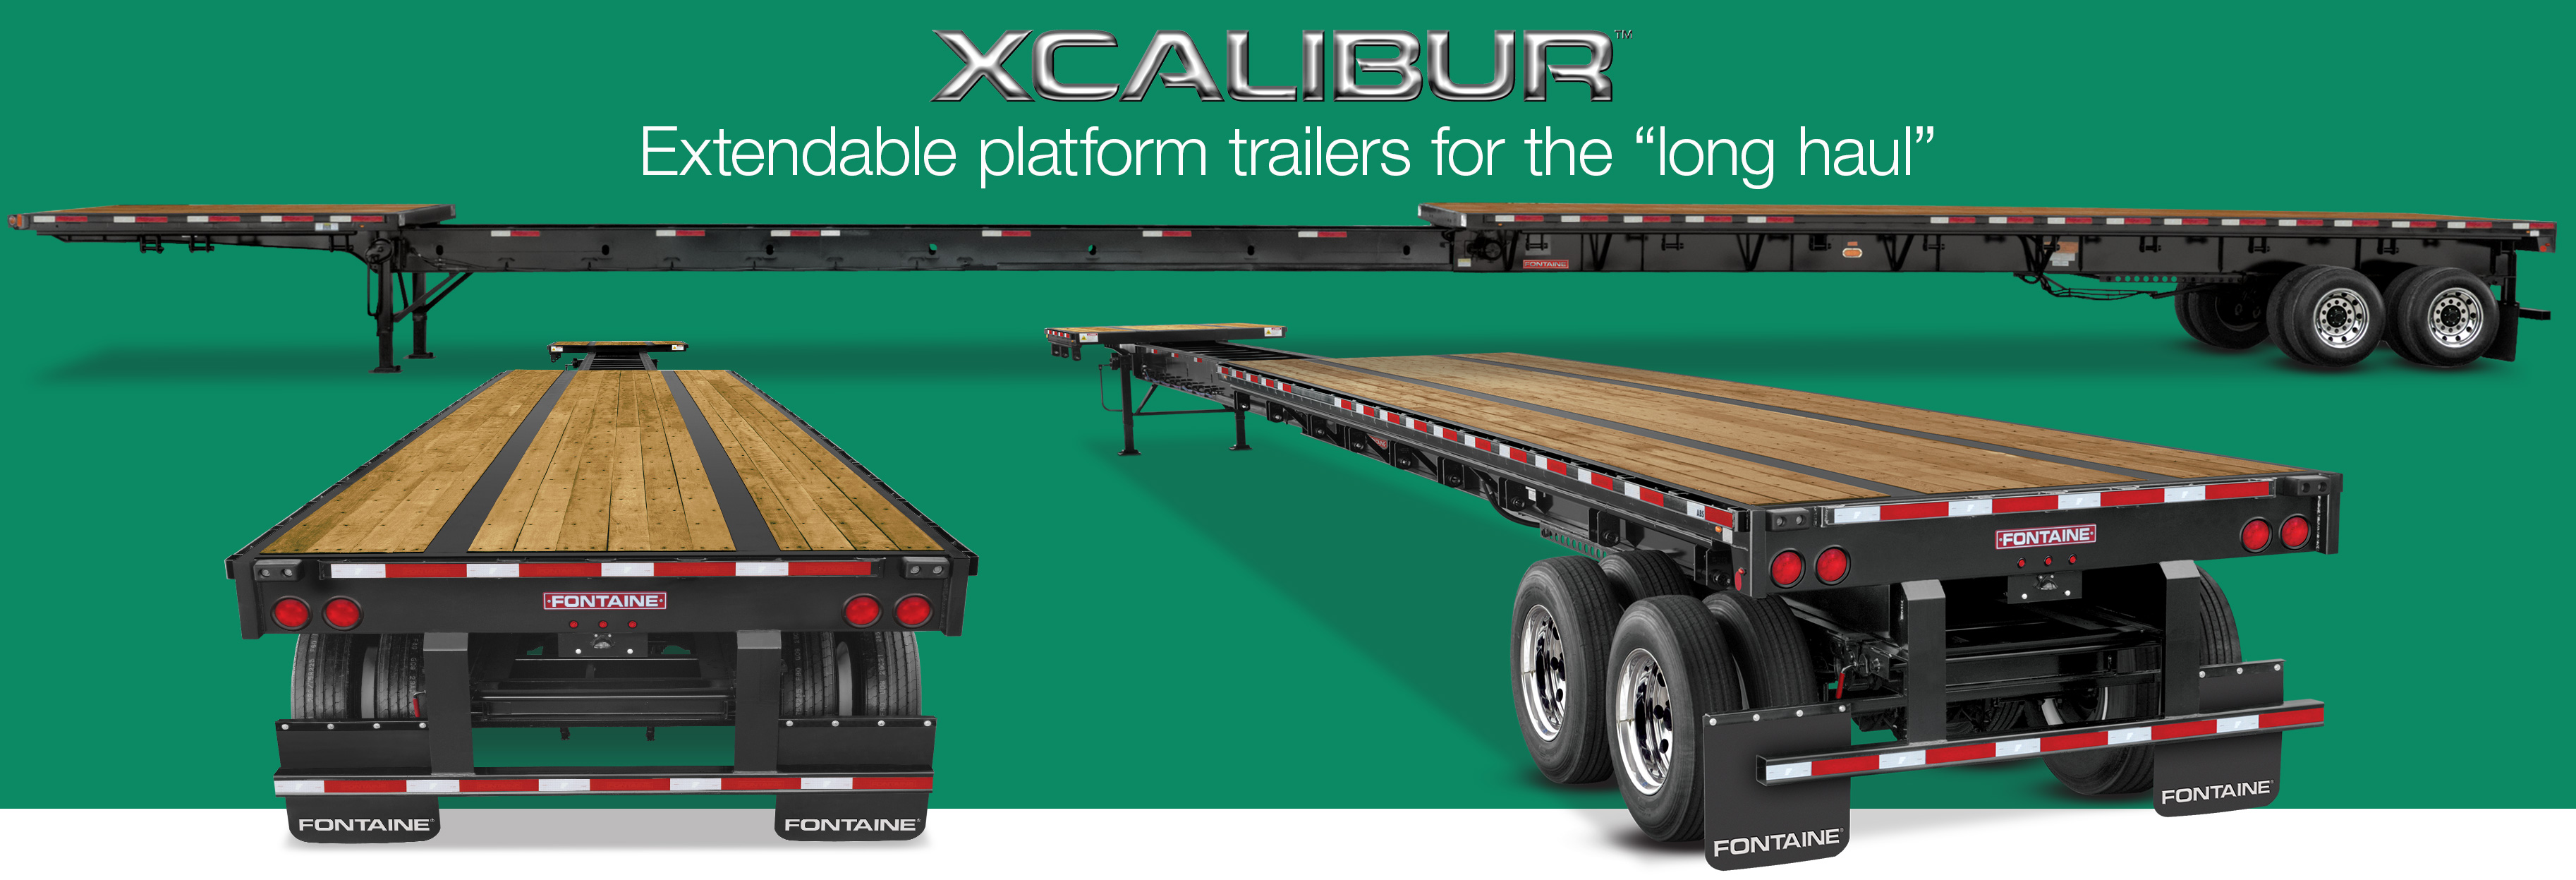 Xcalibur Extendable Platform Trailers